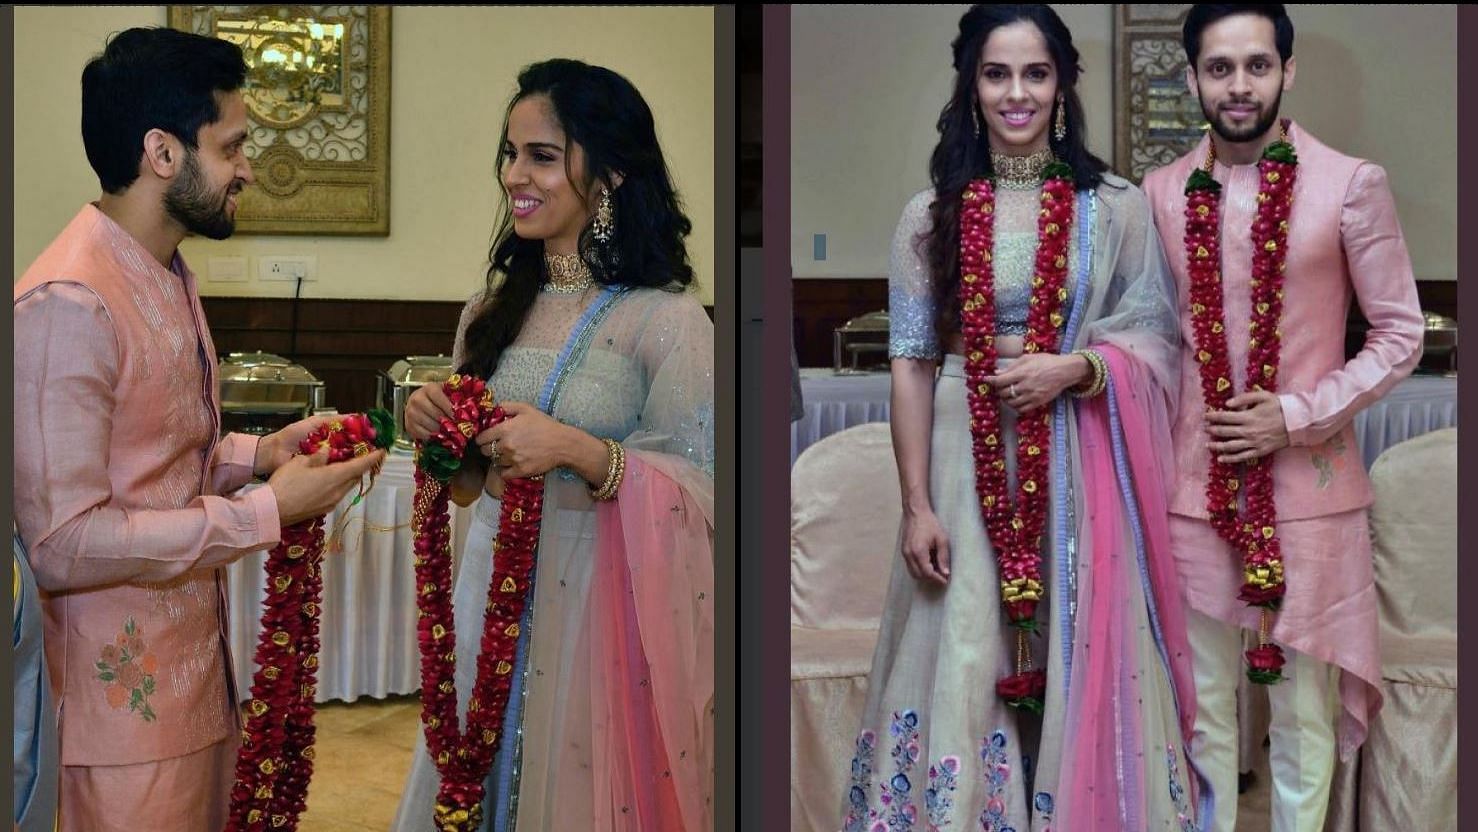 साइना नेहवाल और पी कश्यप ने शुक्रवार को शादी की